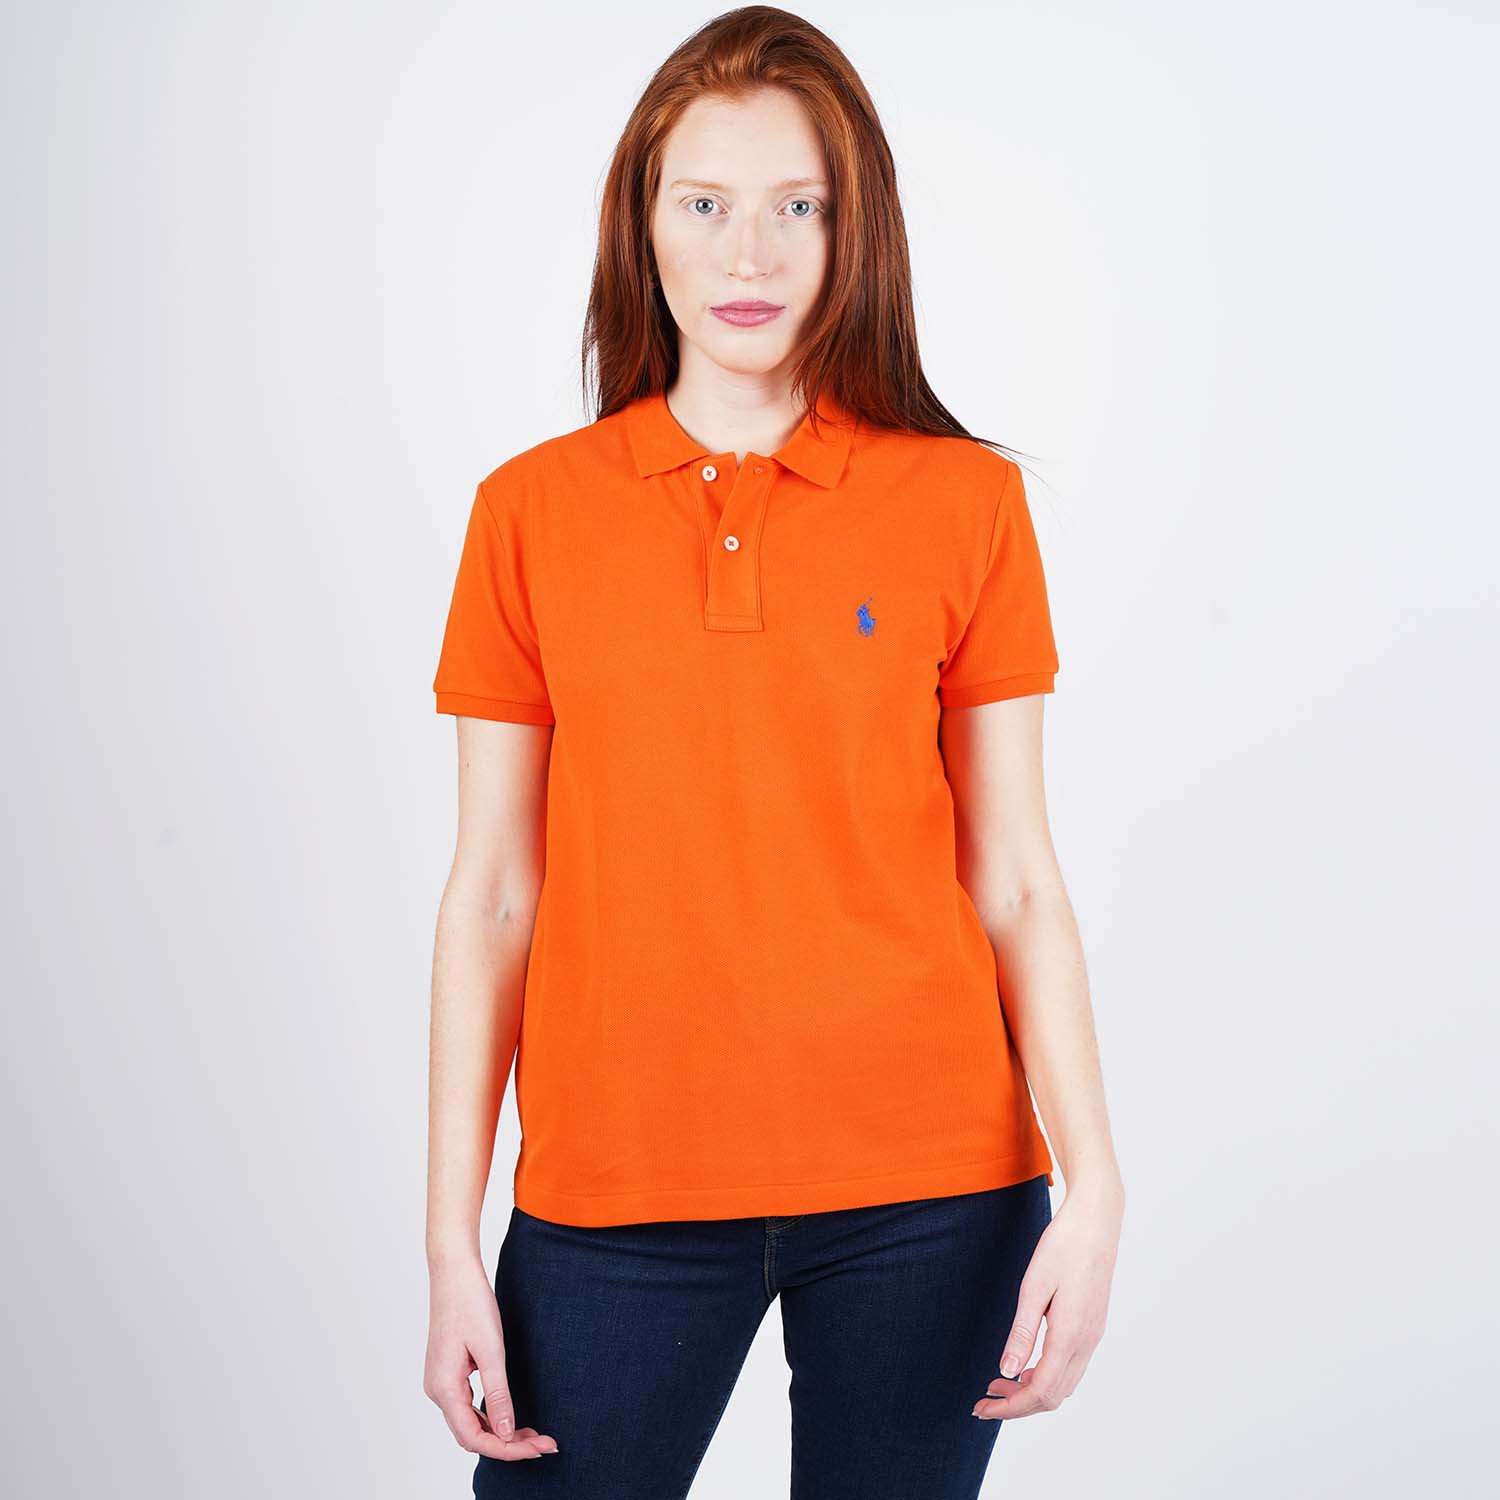 Polo Ralph Lauren Women’S Classic Fit Mesh Polo Shirt (9000050494_44938)